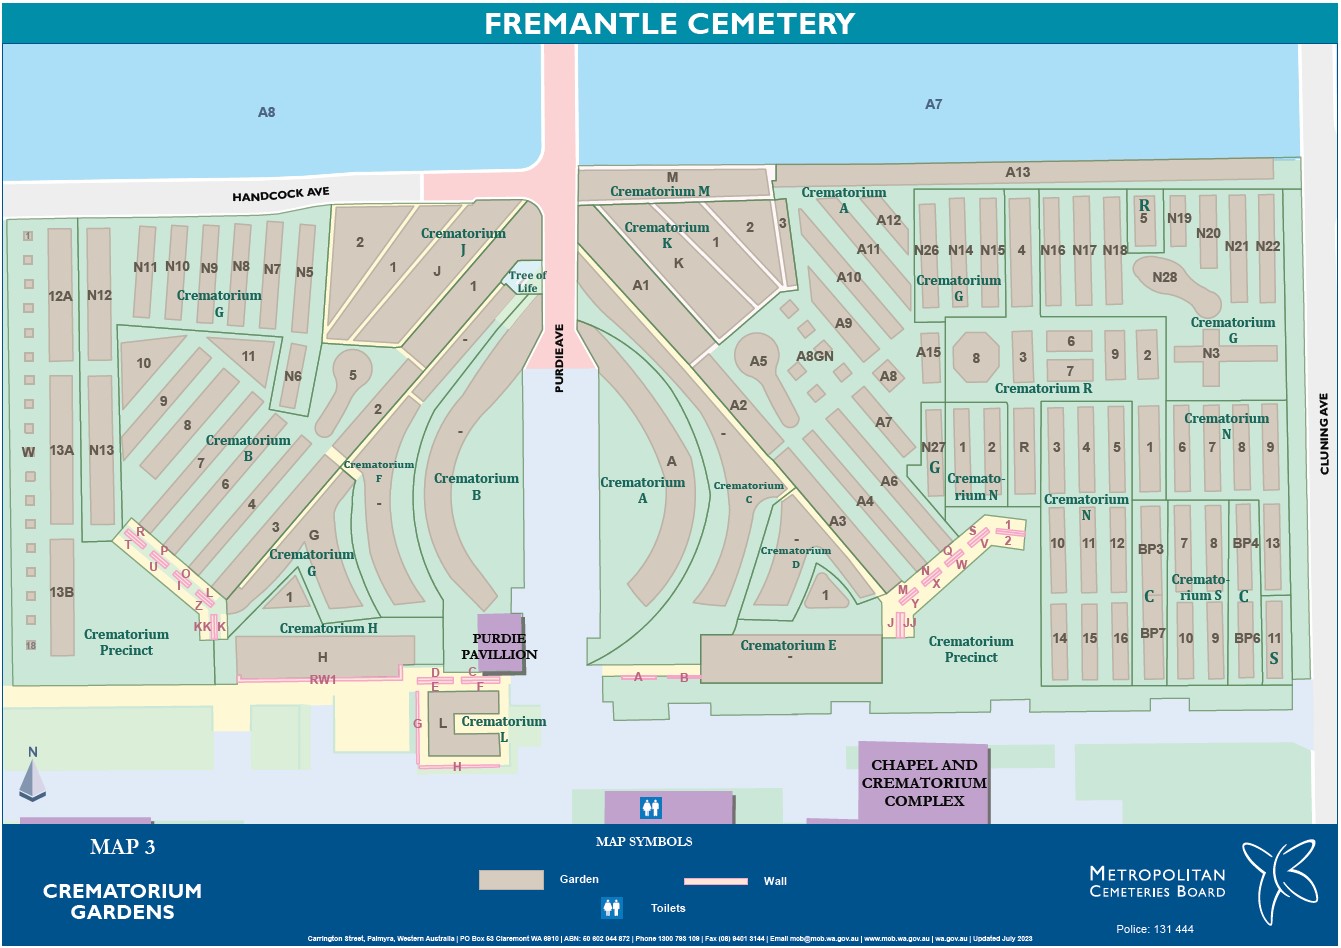 Map 3 Crematorium Rose Gardens Fremantle Cemetery